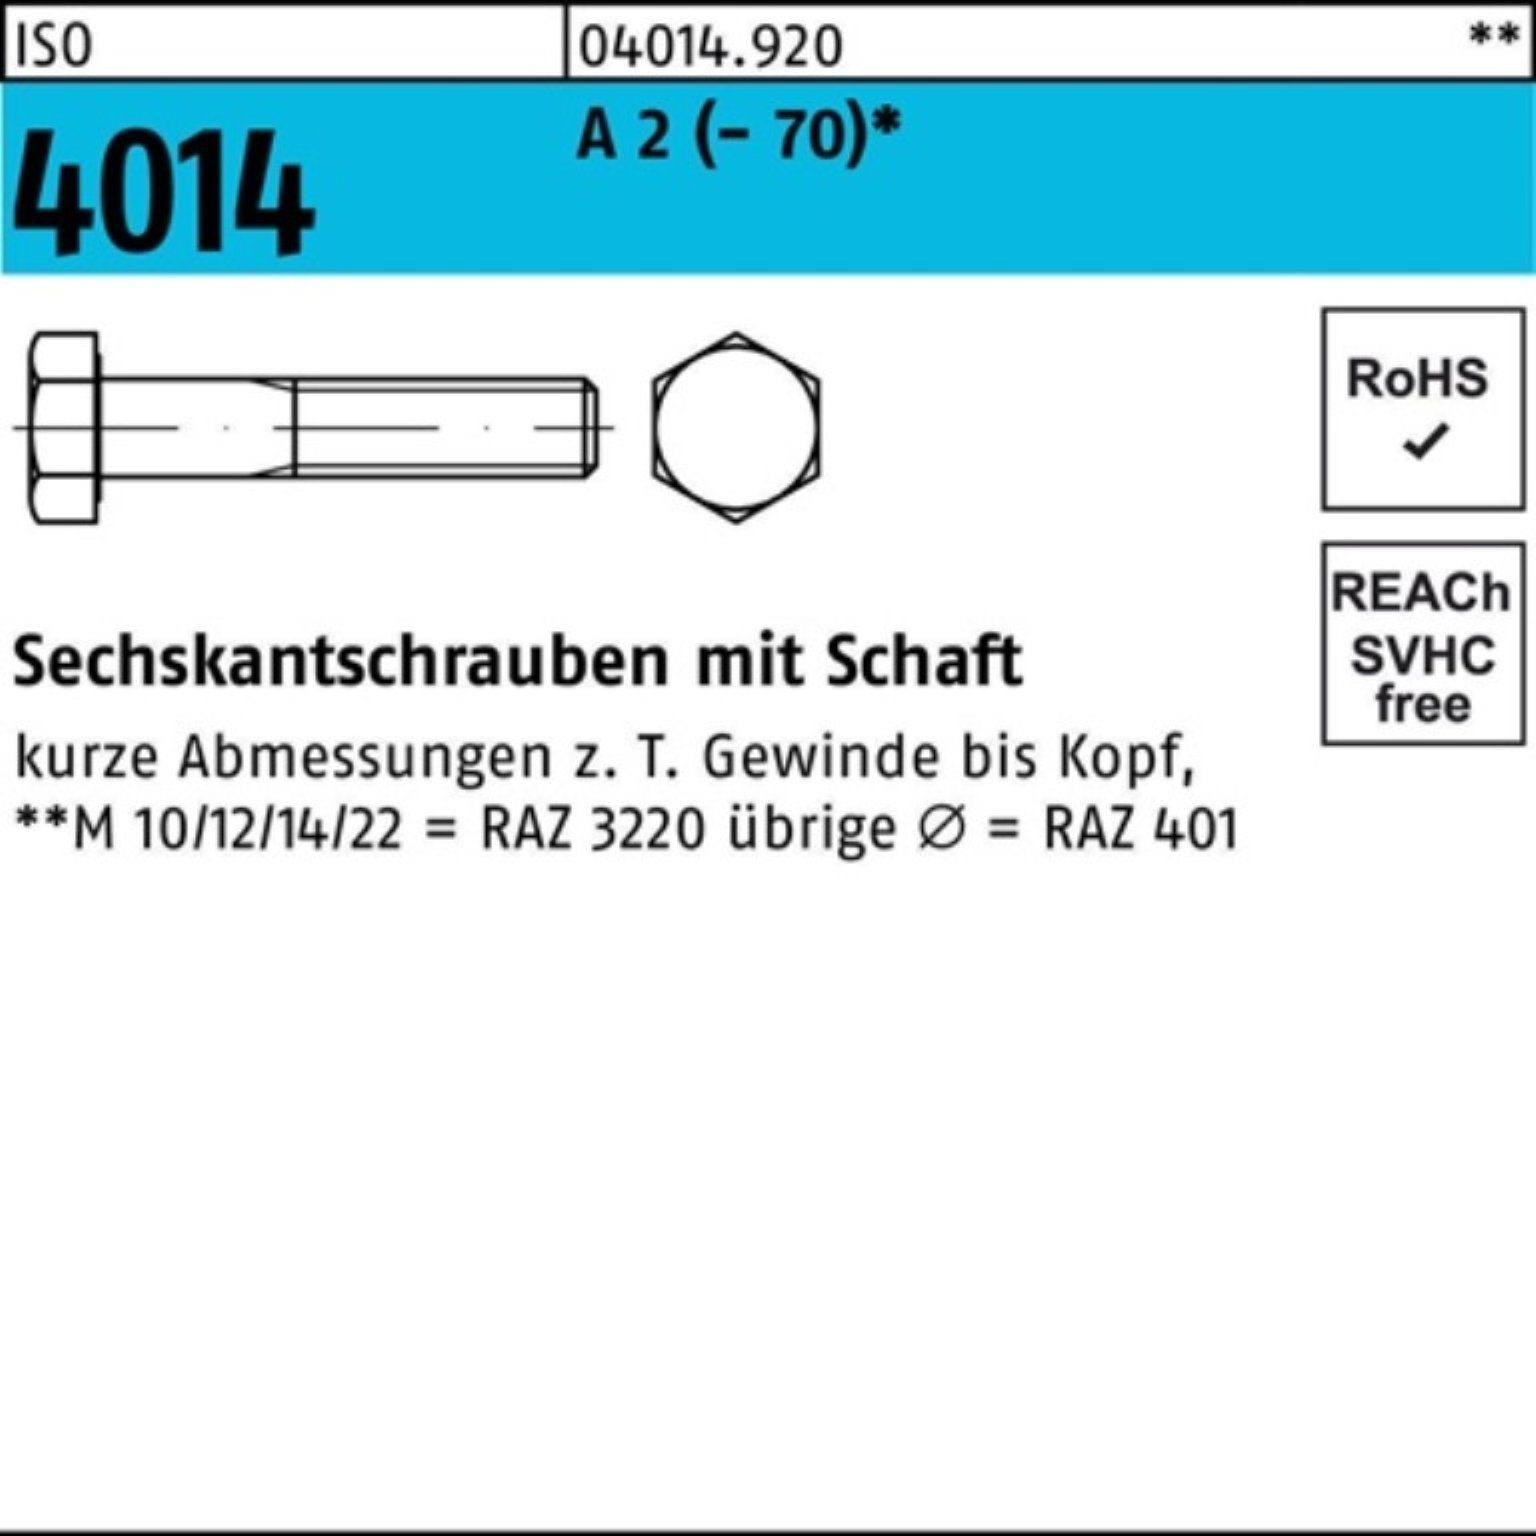 Bufab Sechskantschraube 100er Pack Sechskantschraube ISO 4014 Schaft M14x 160 A 2 (70) 1 St